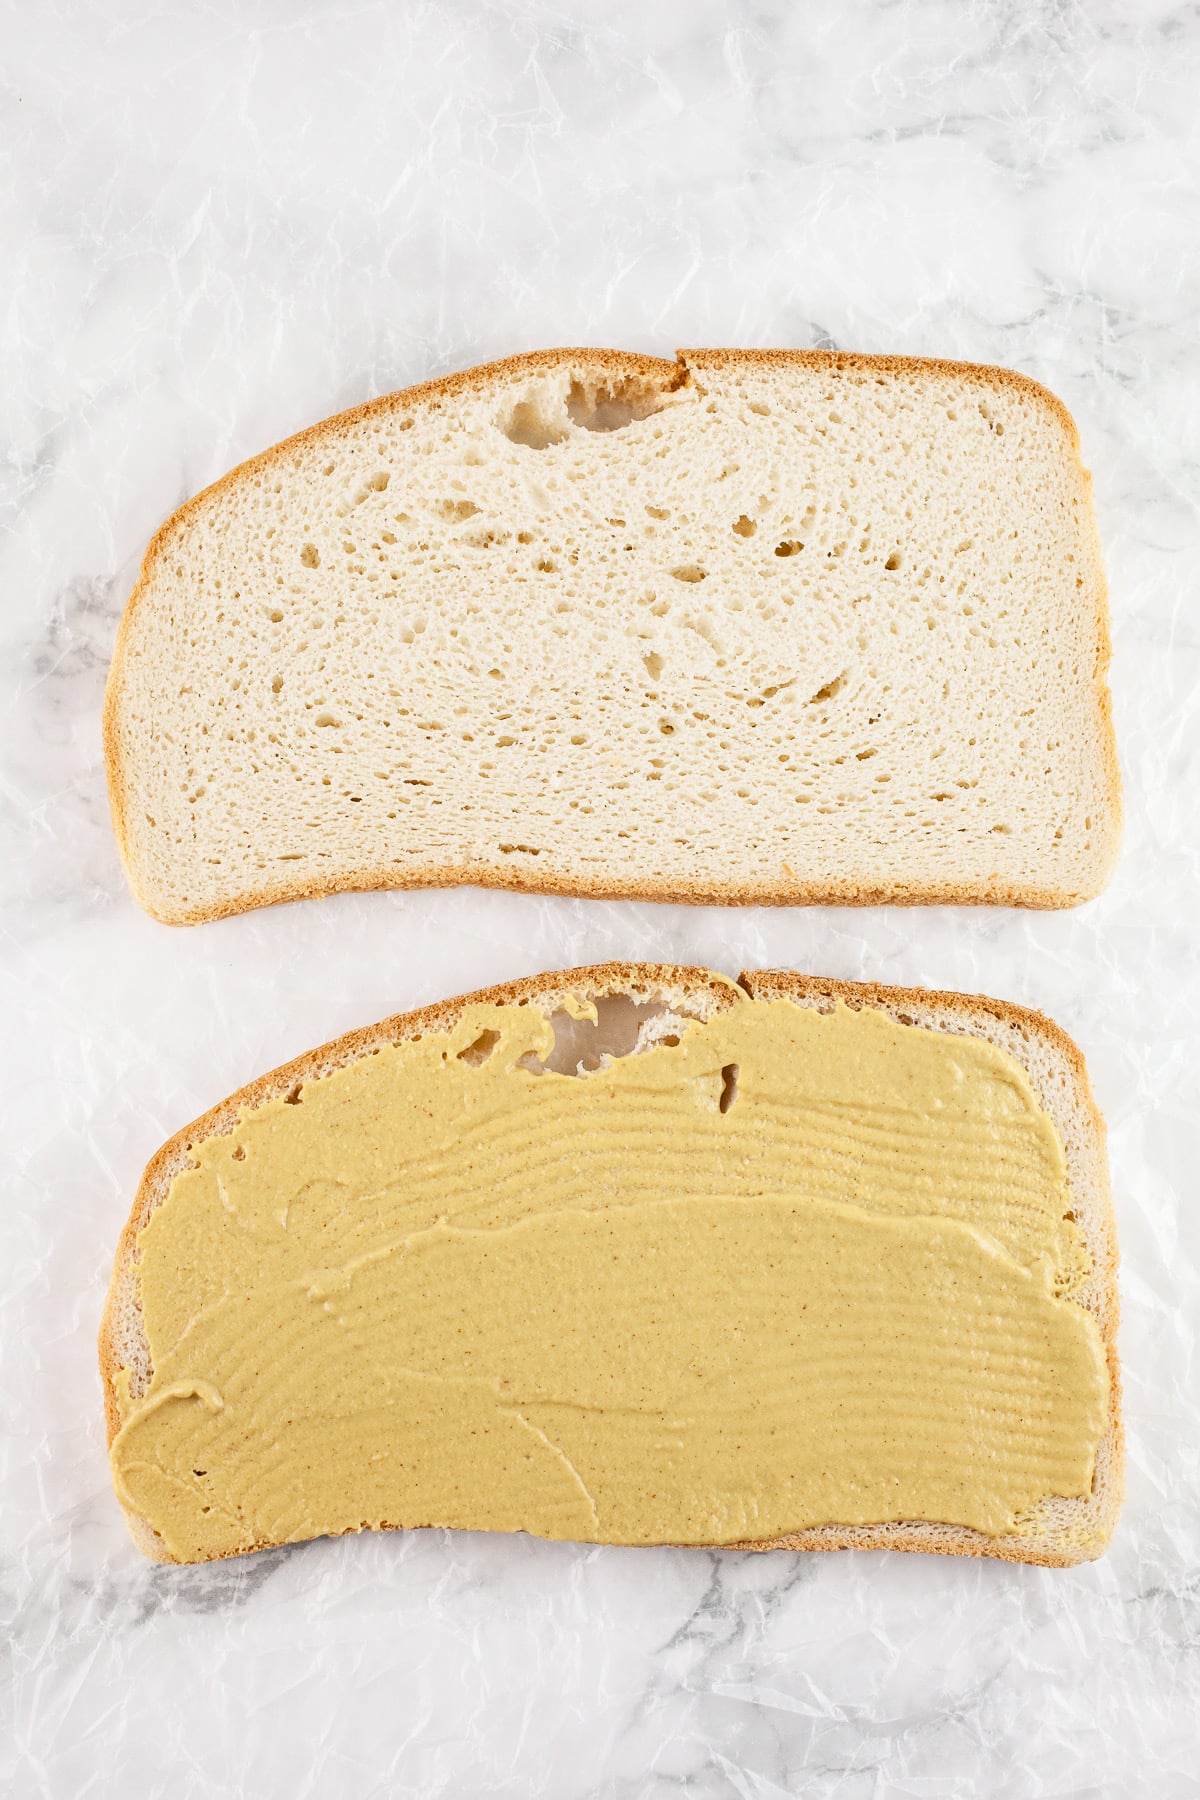 Sliced bread with Dijon mustard.